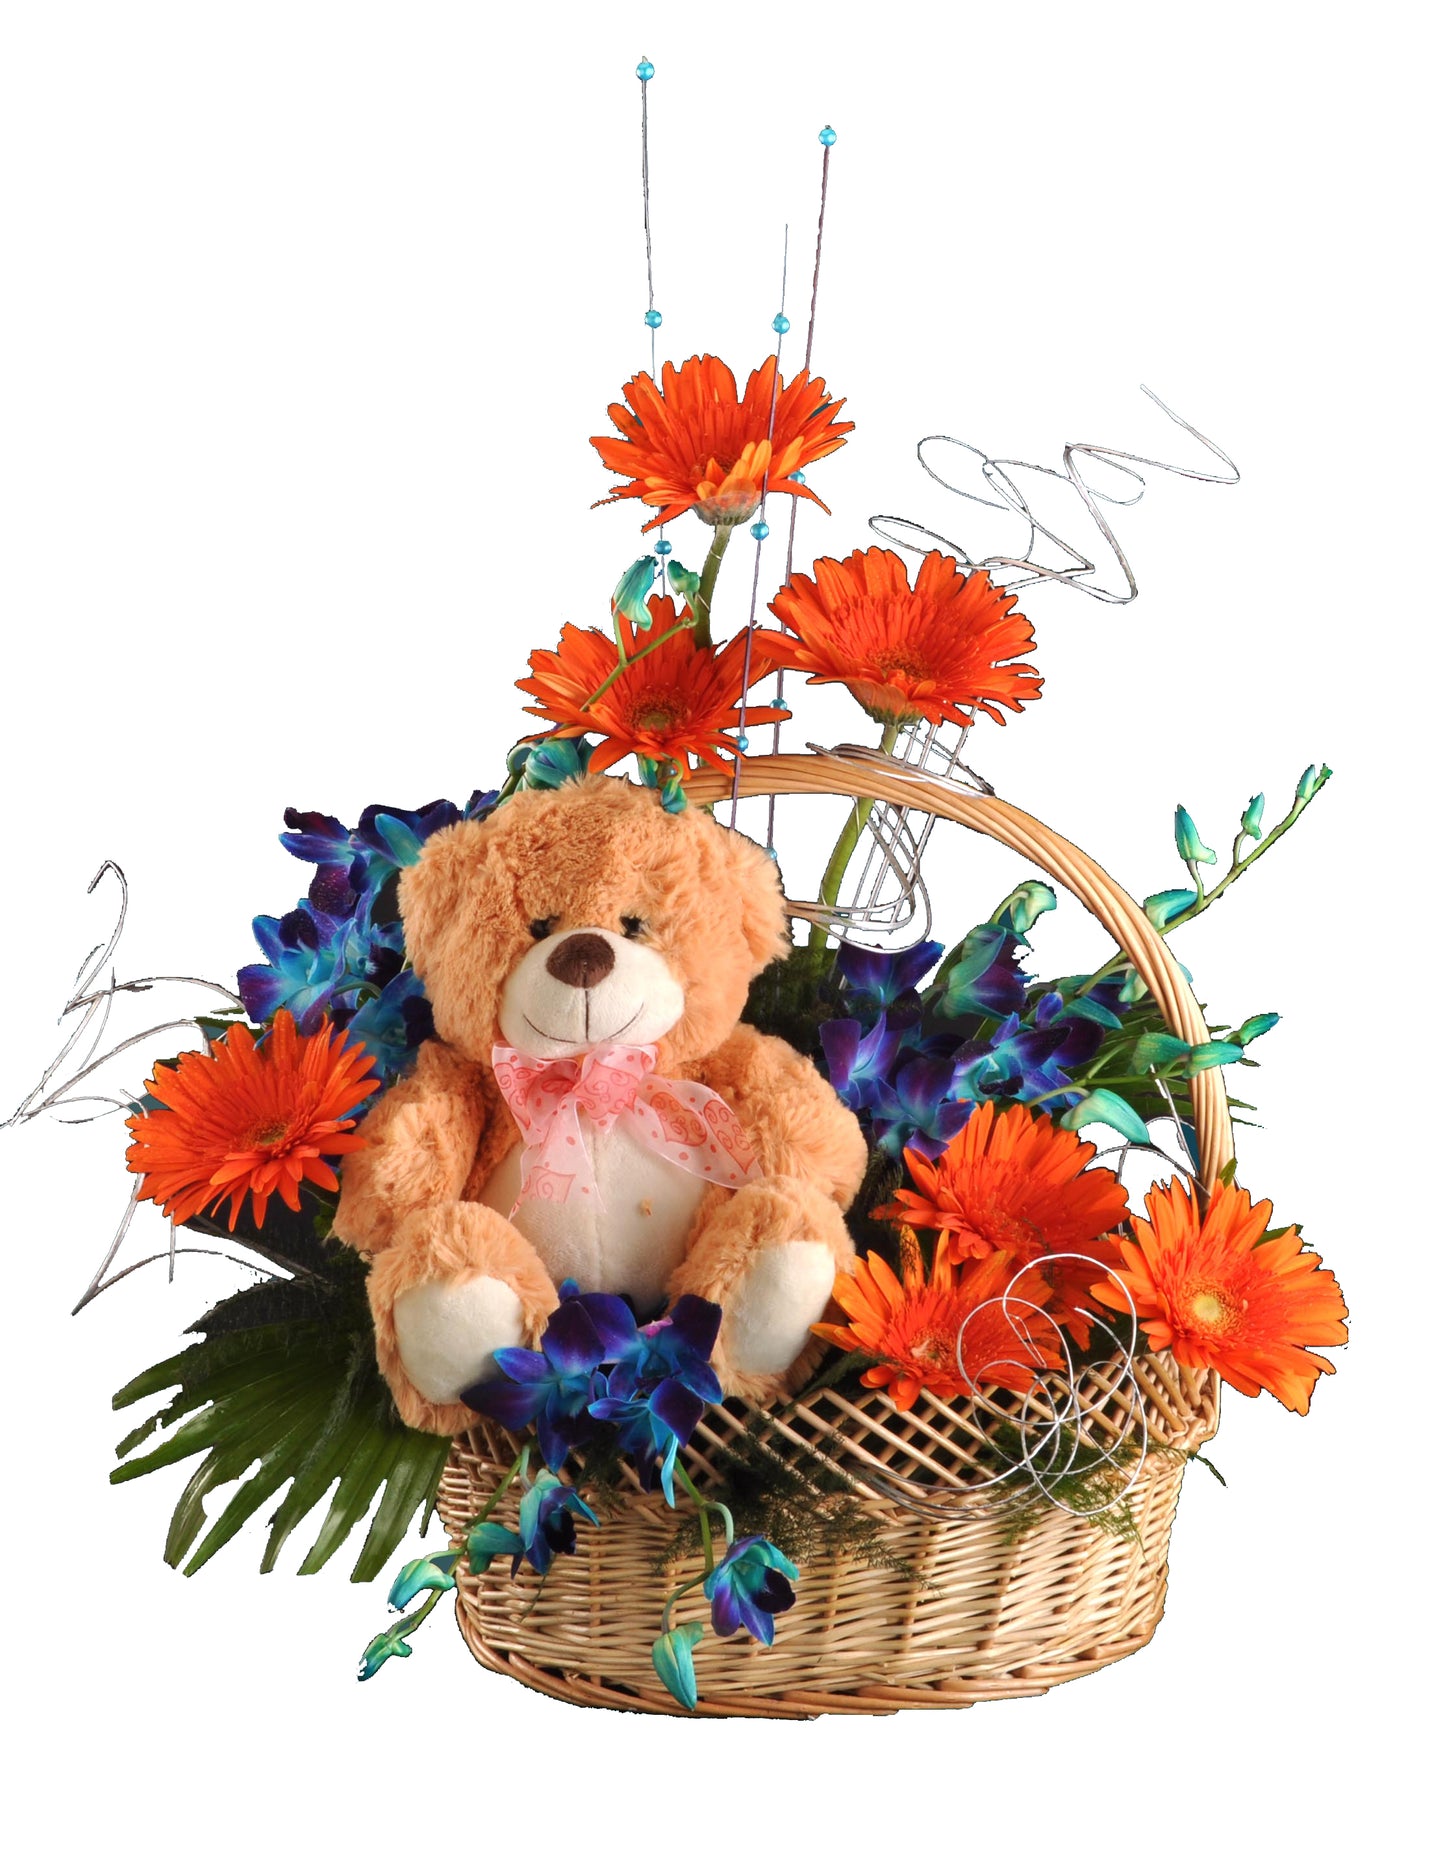 Fresh Flower Arrangement with Cute Teddy